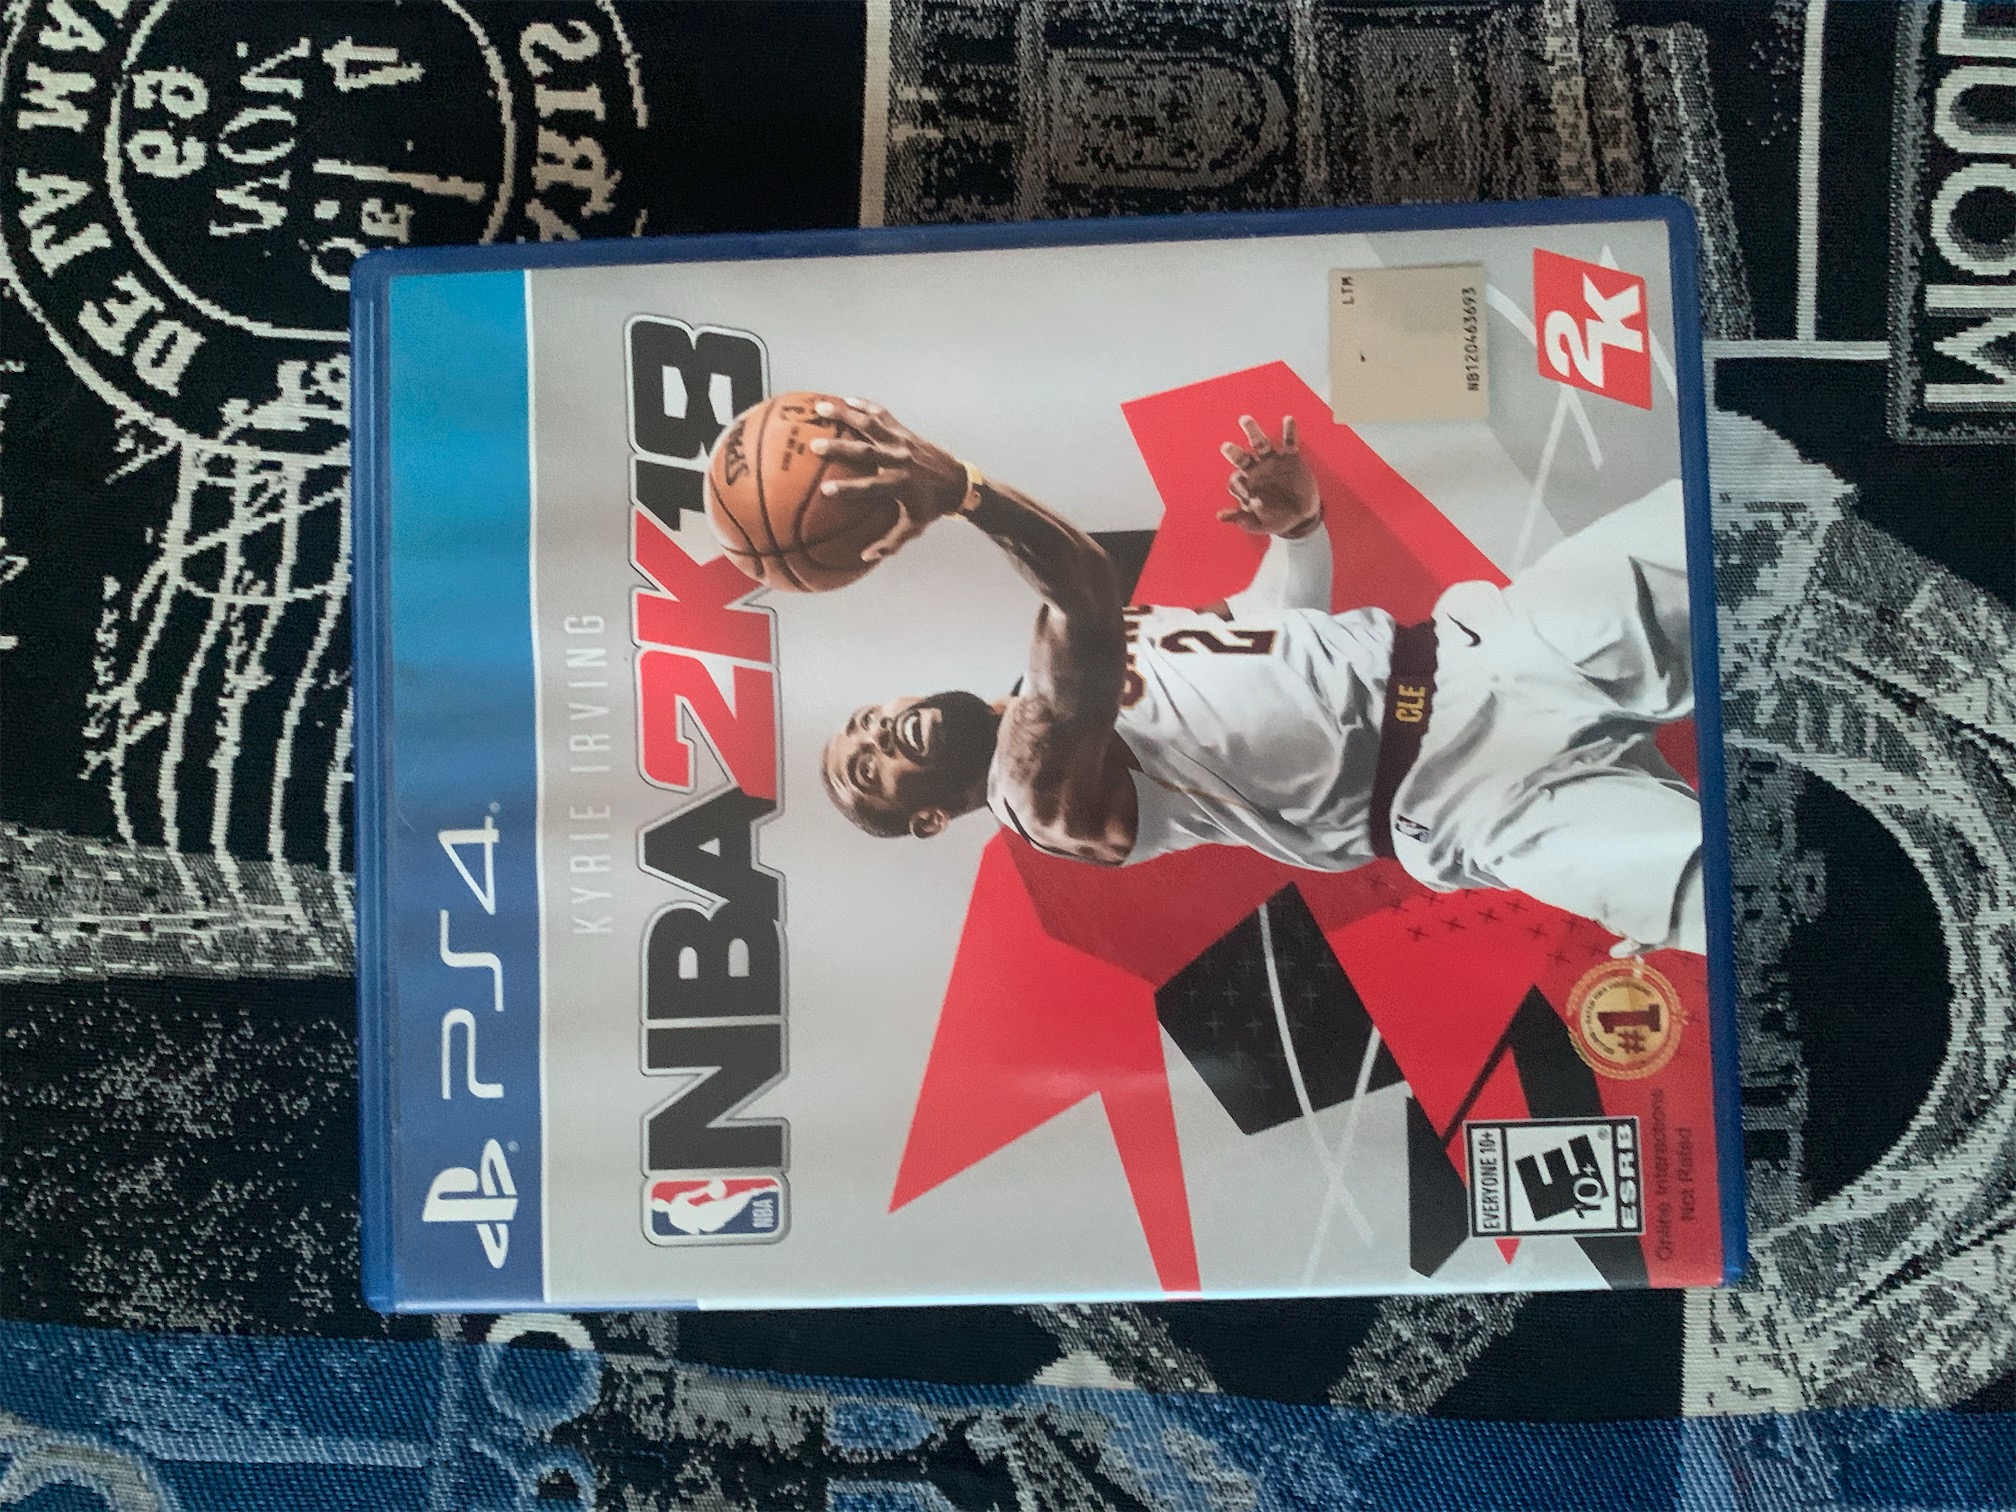 consolas y videojuegos - NBA2k18